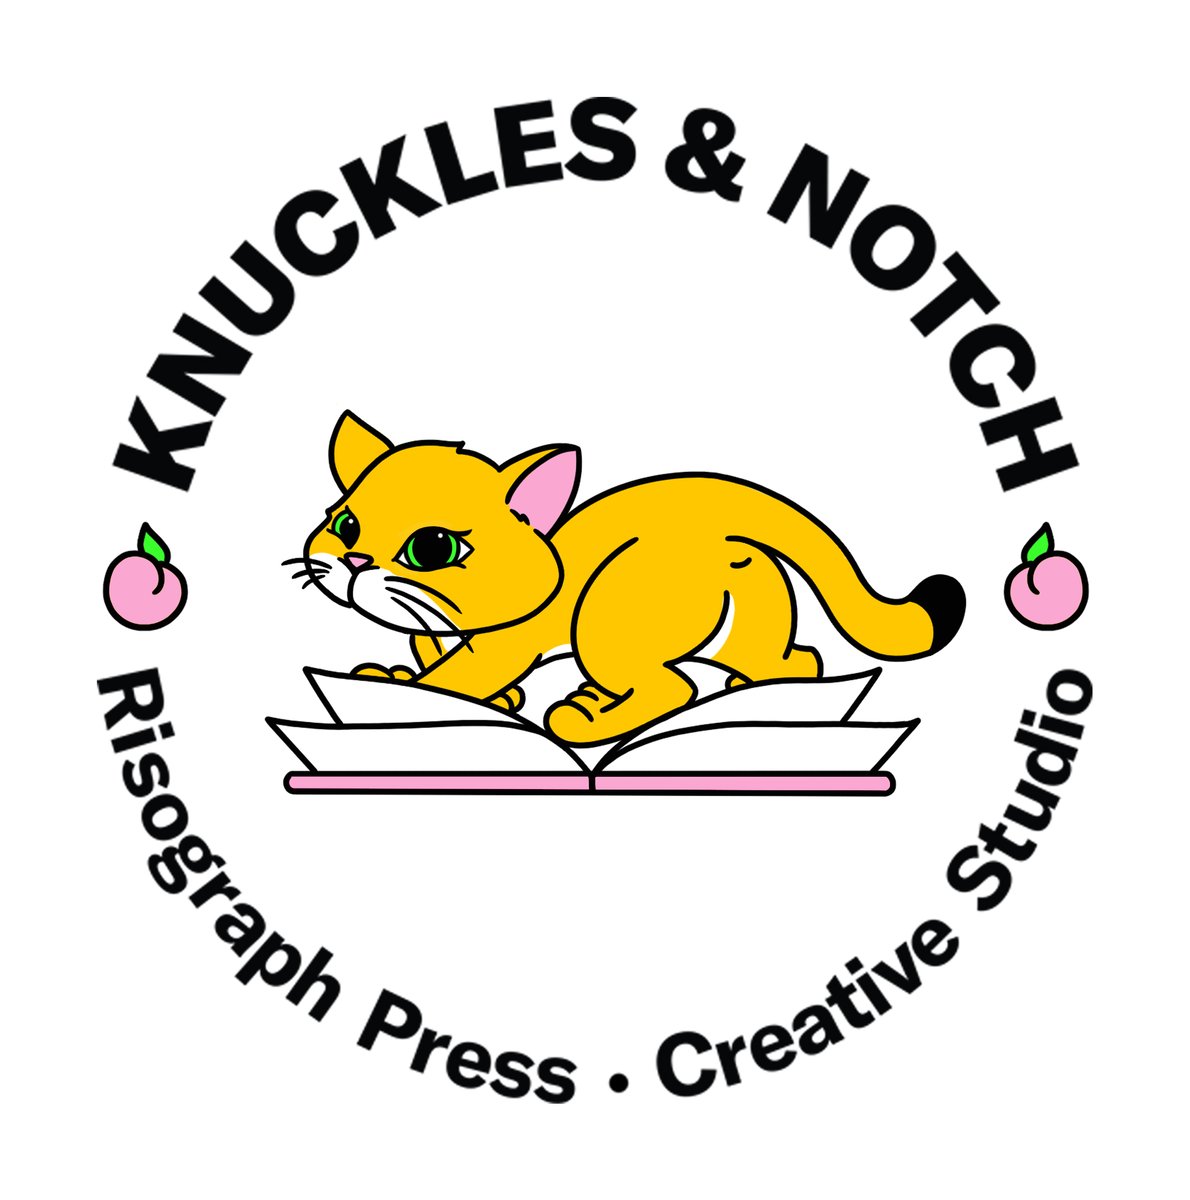 Knuckles & Notch